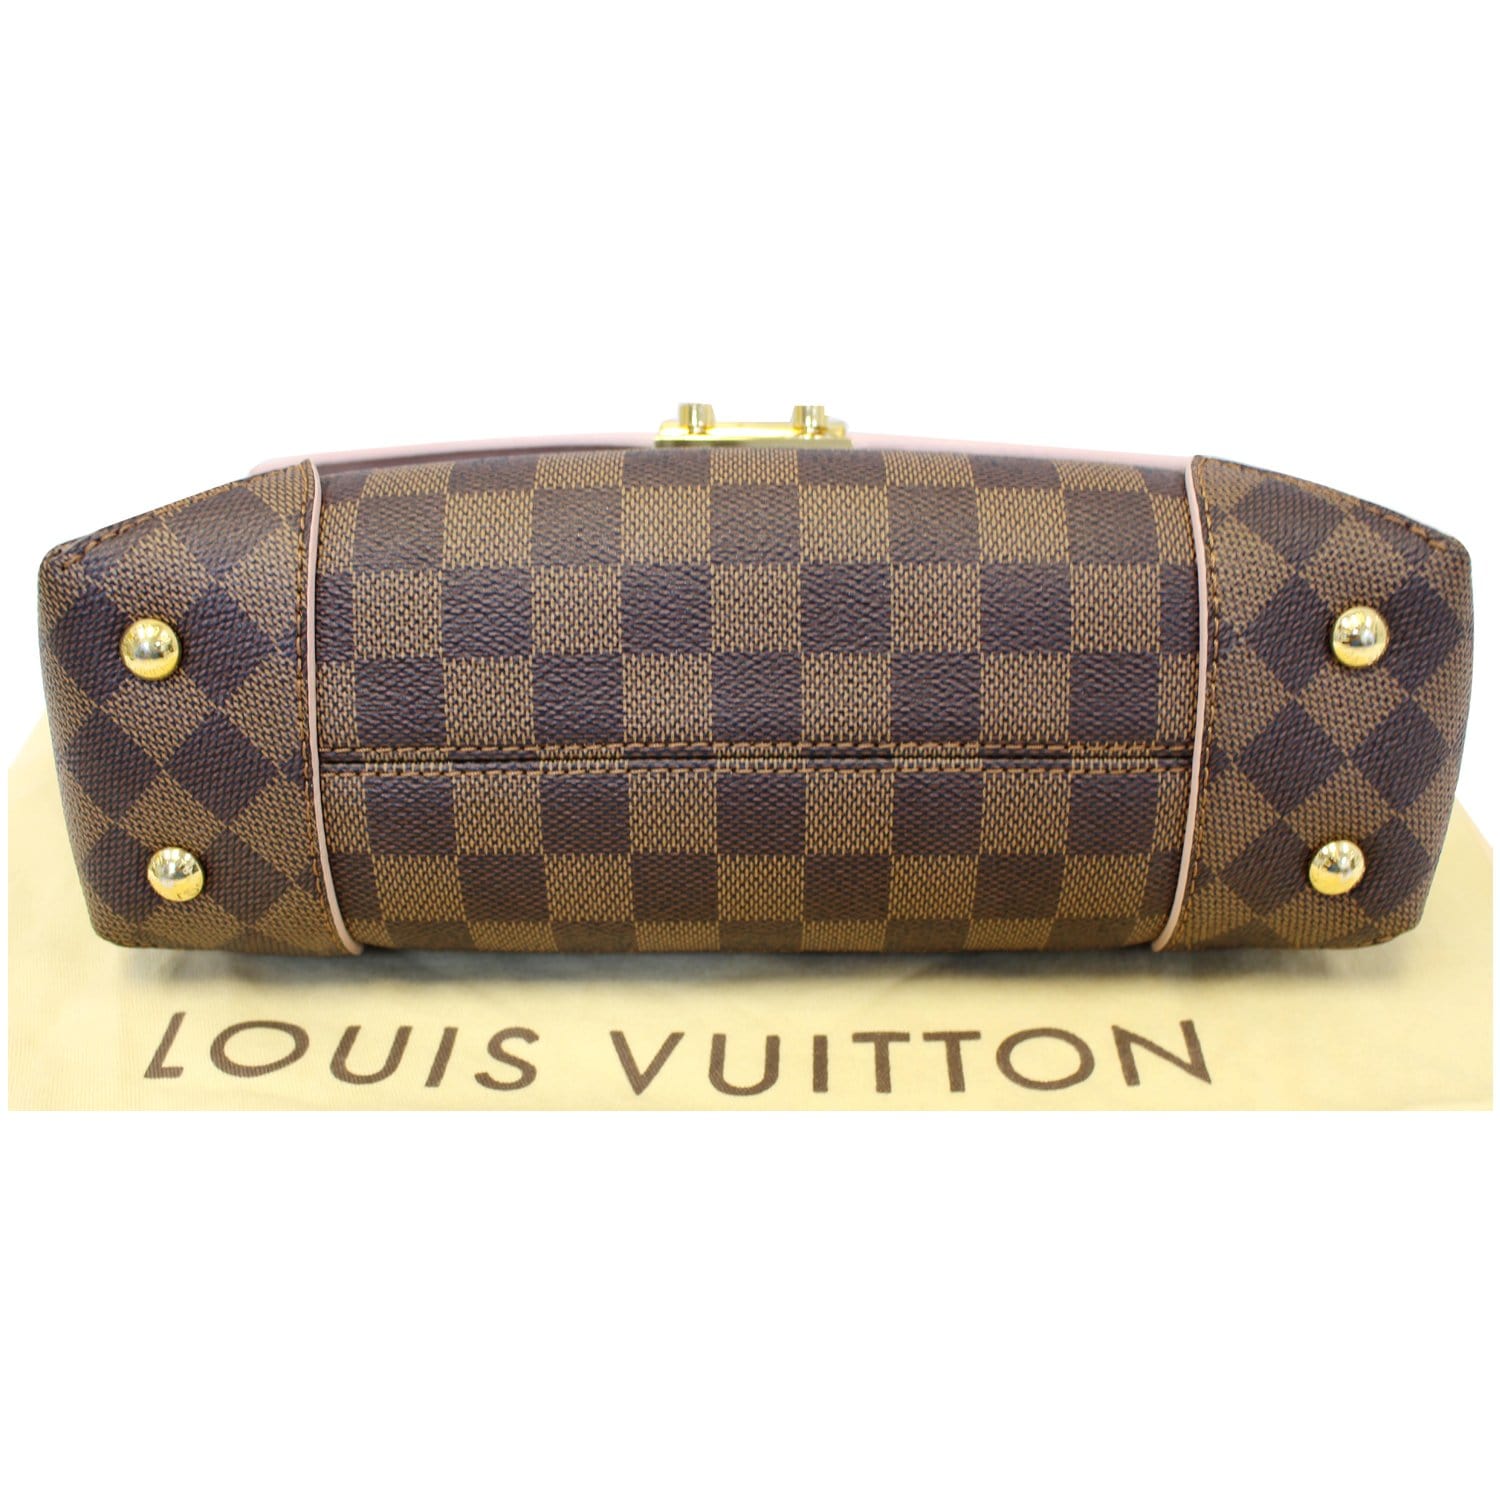 LOUIS VUITTON LOUIS VUITTON Caissa Clutch Chain Shoulder Bag